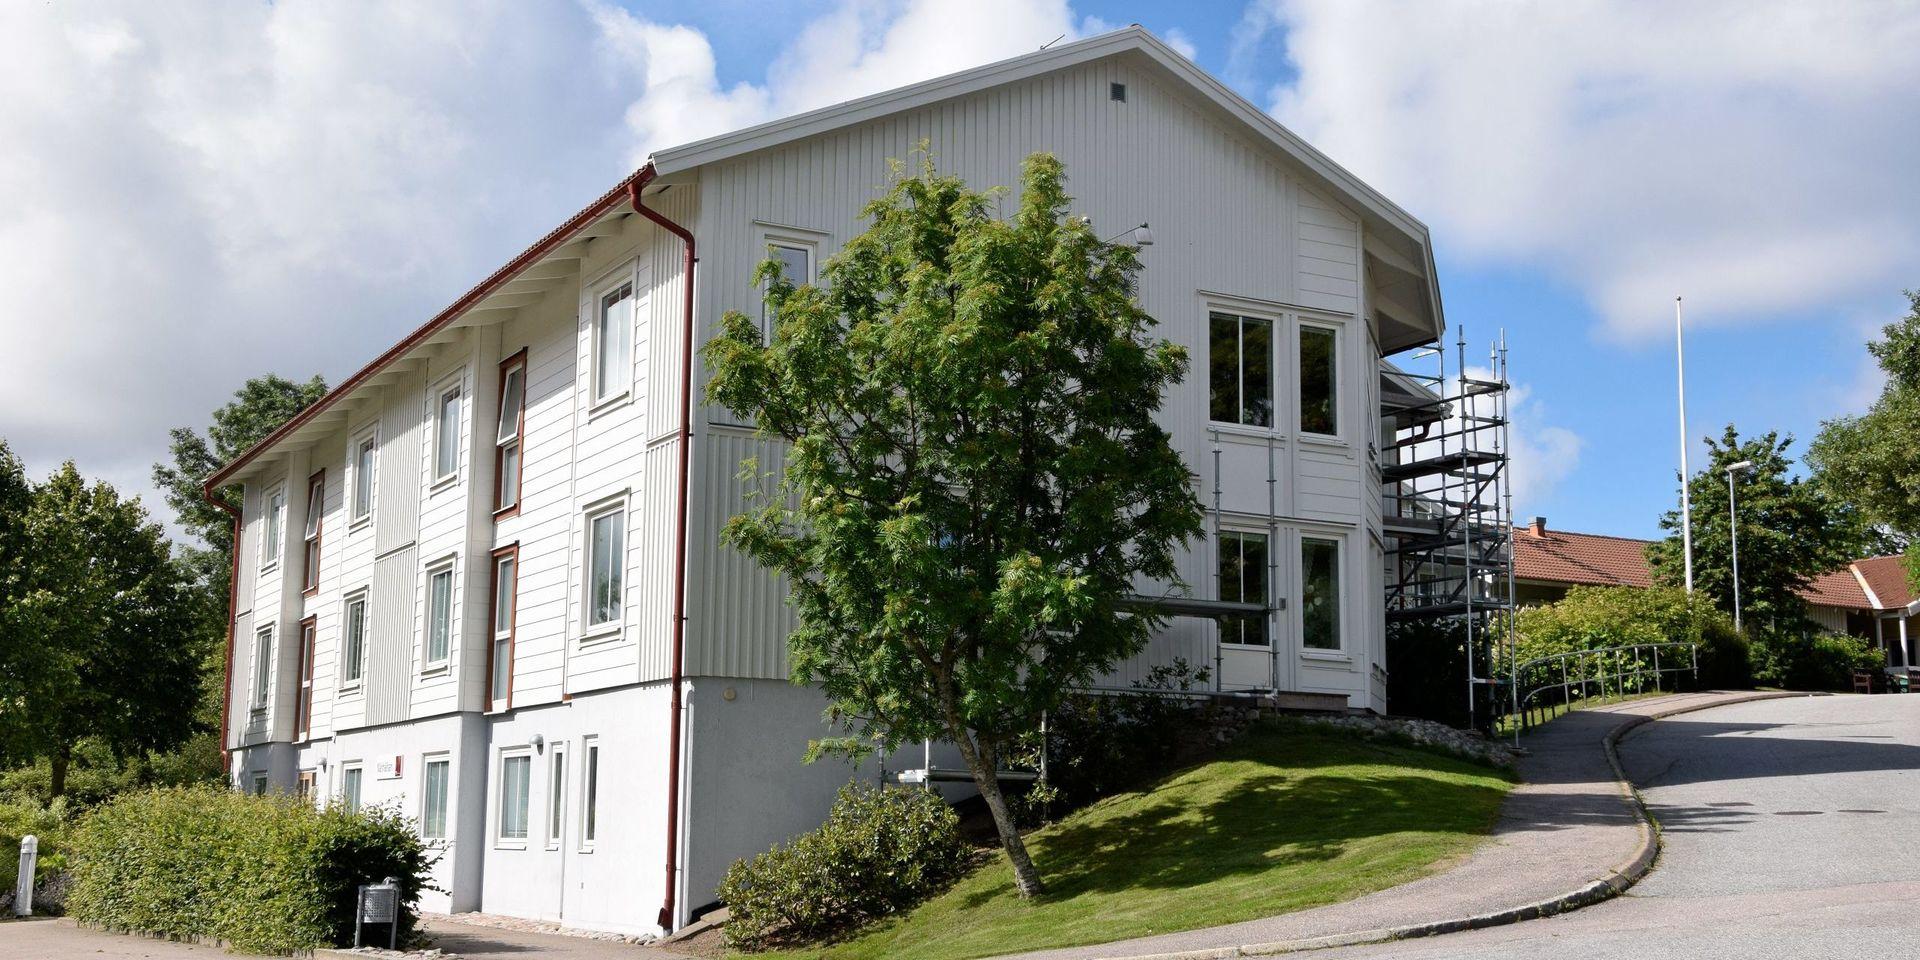 Ett nytt äldreboende bör byggas på Skaftö. Det anser i alla fall det lokala örådet som diskuterat frågan på ett årsmöte.